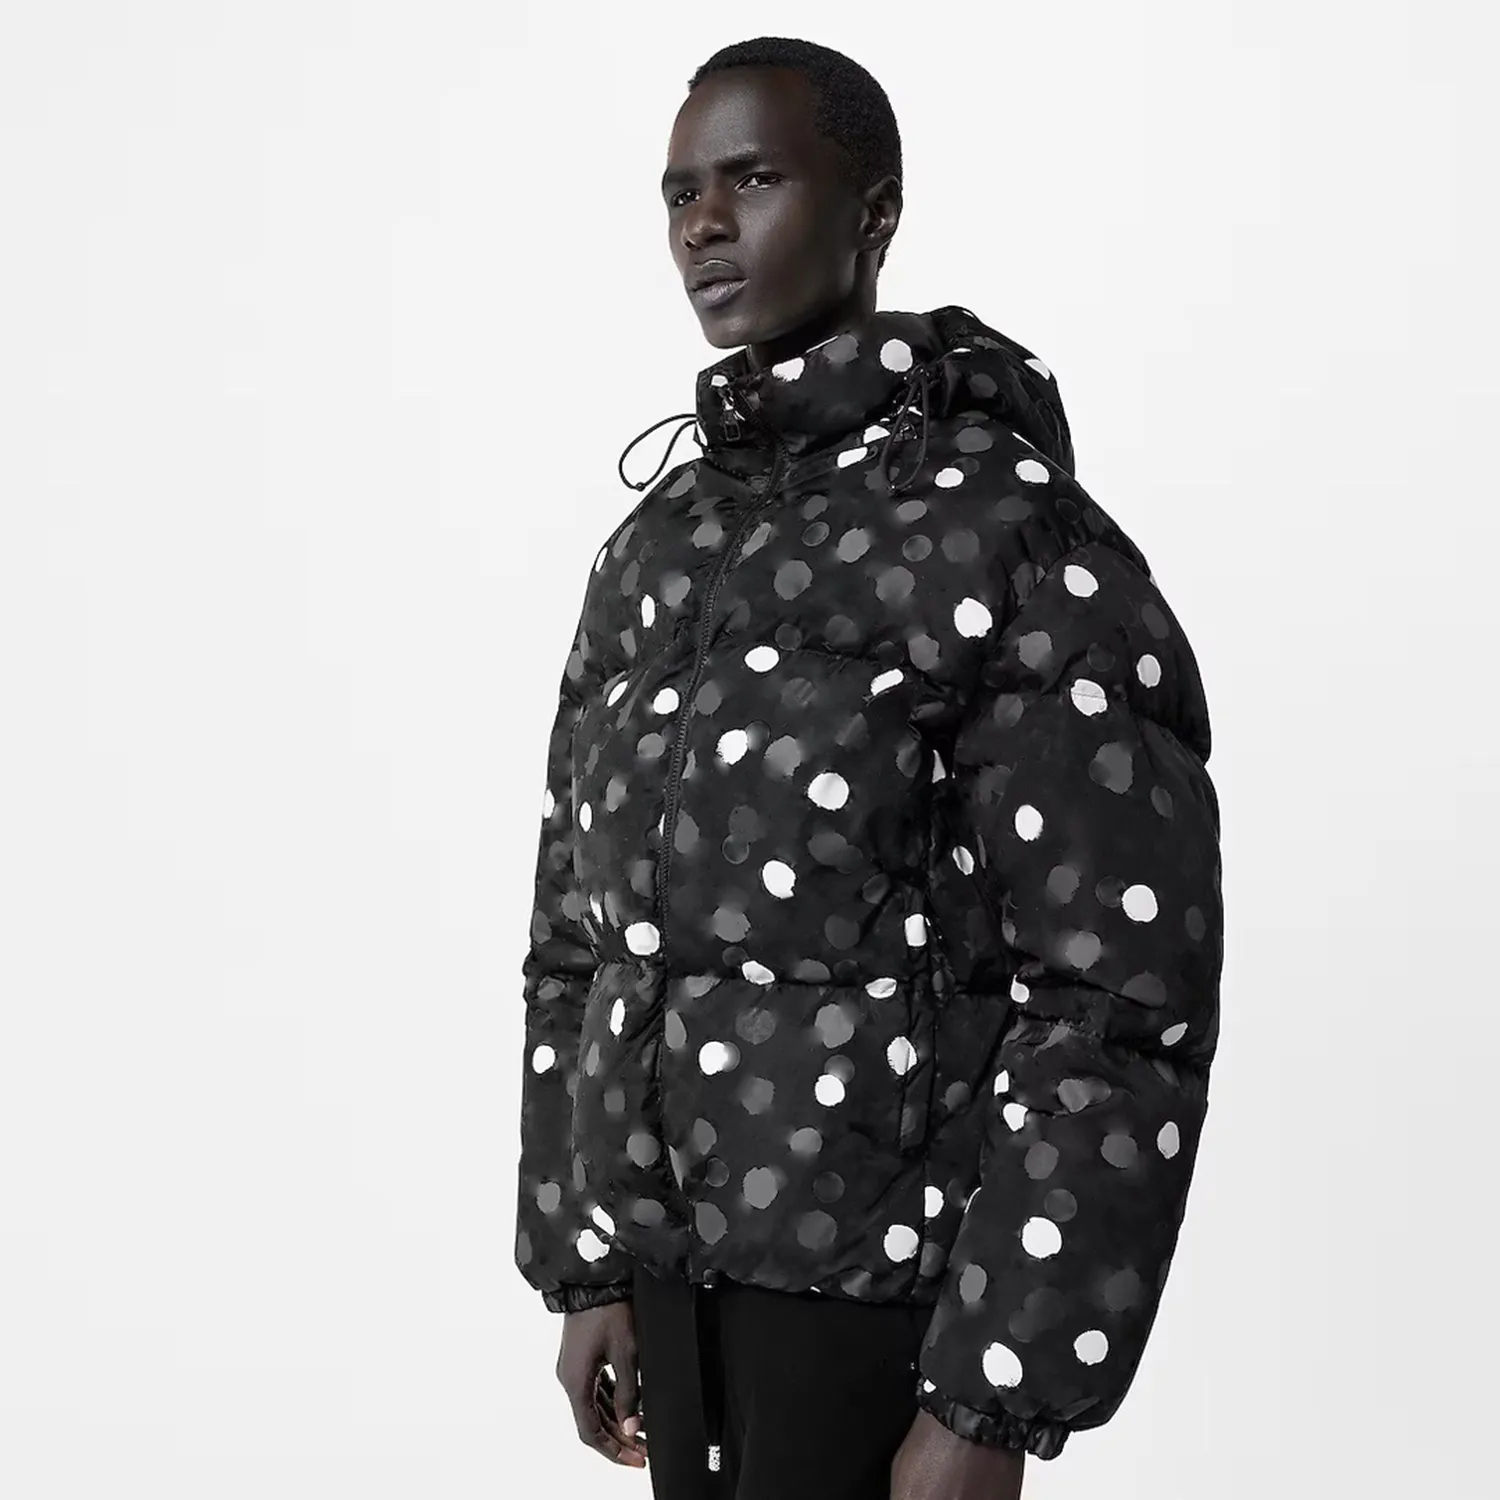 Jaqueta masculina com capuz DUYOU YK Look 02 apresenta um blouson envolvente destacando a jaqueta emblemática de pontos pintados dos artistas D |